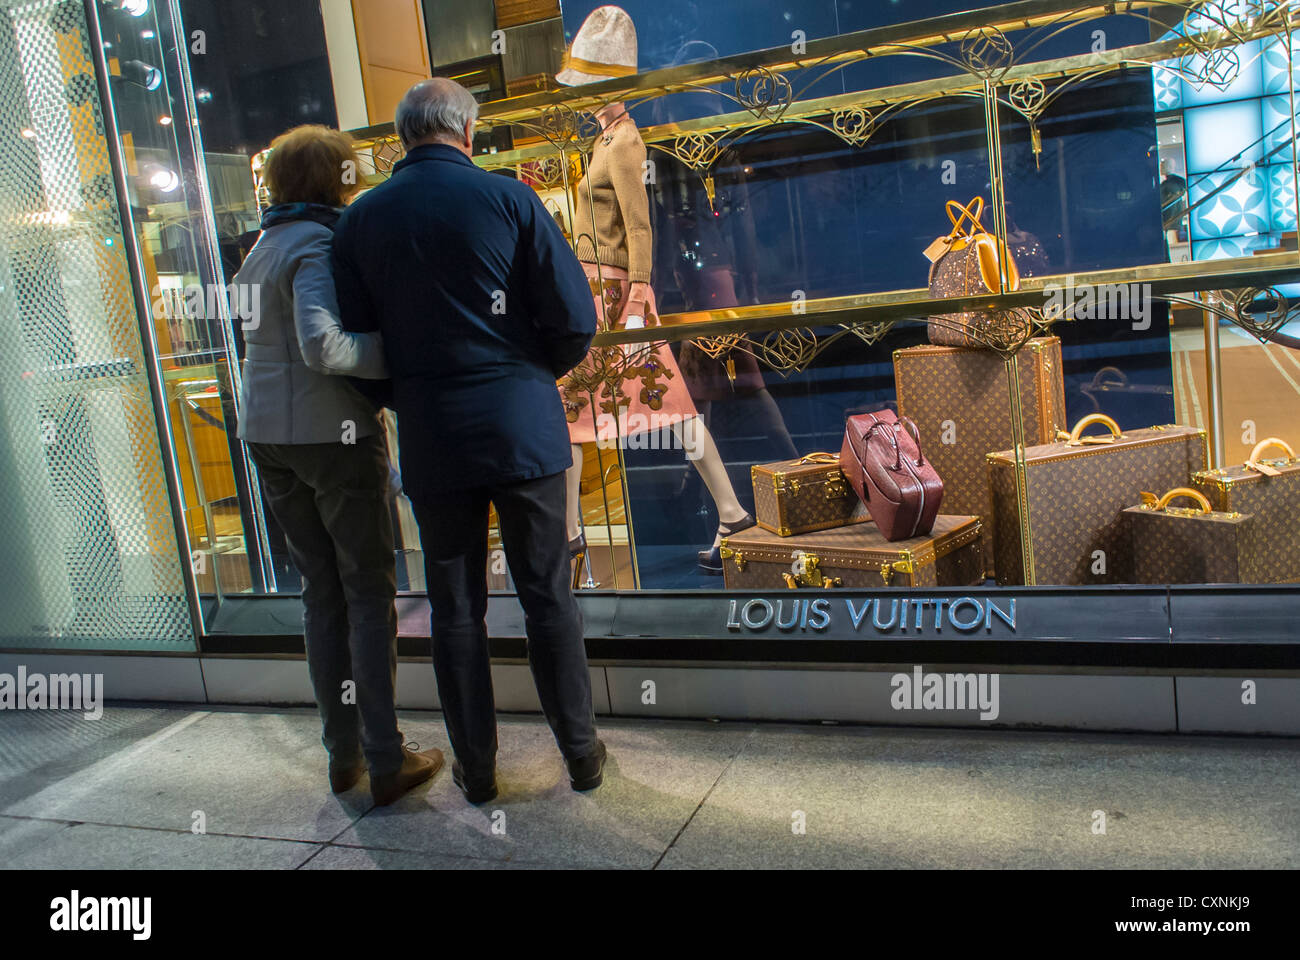 Louis Vuitton, Manhattan, Shopping